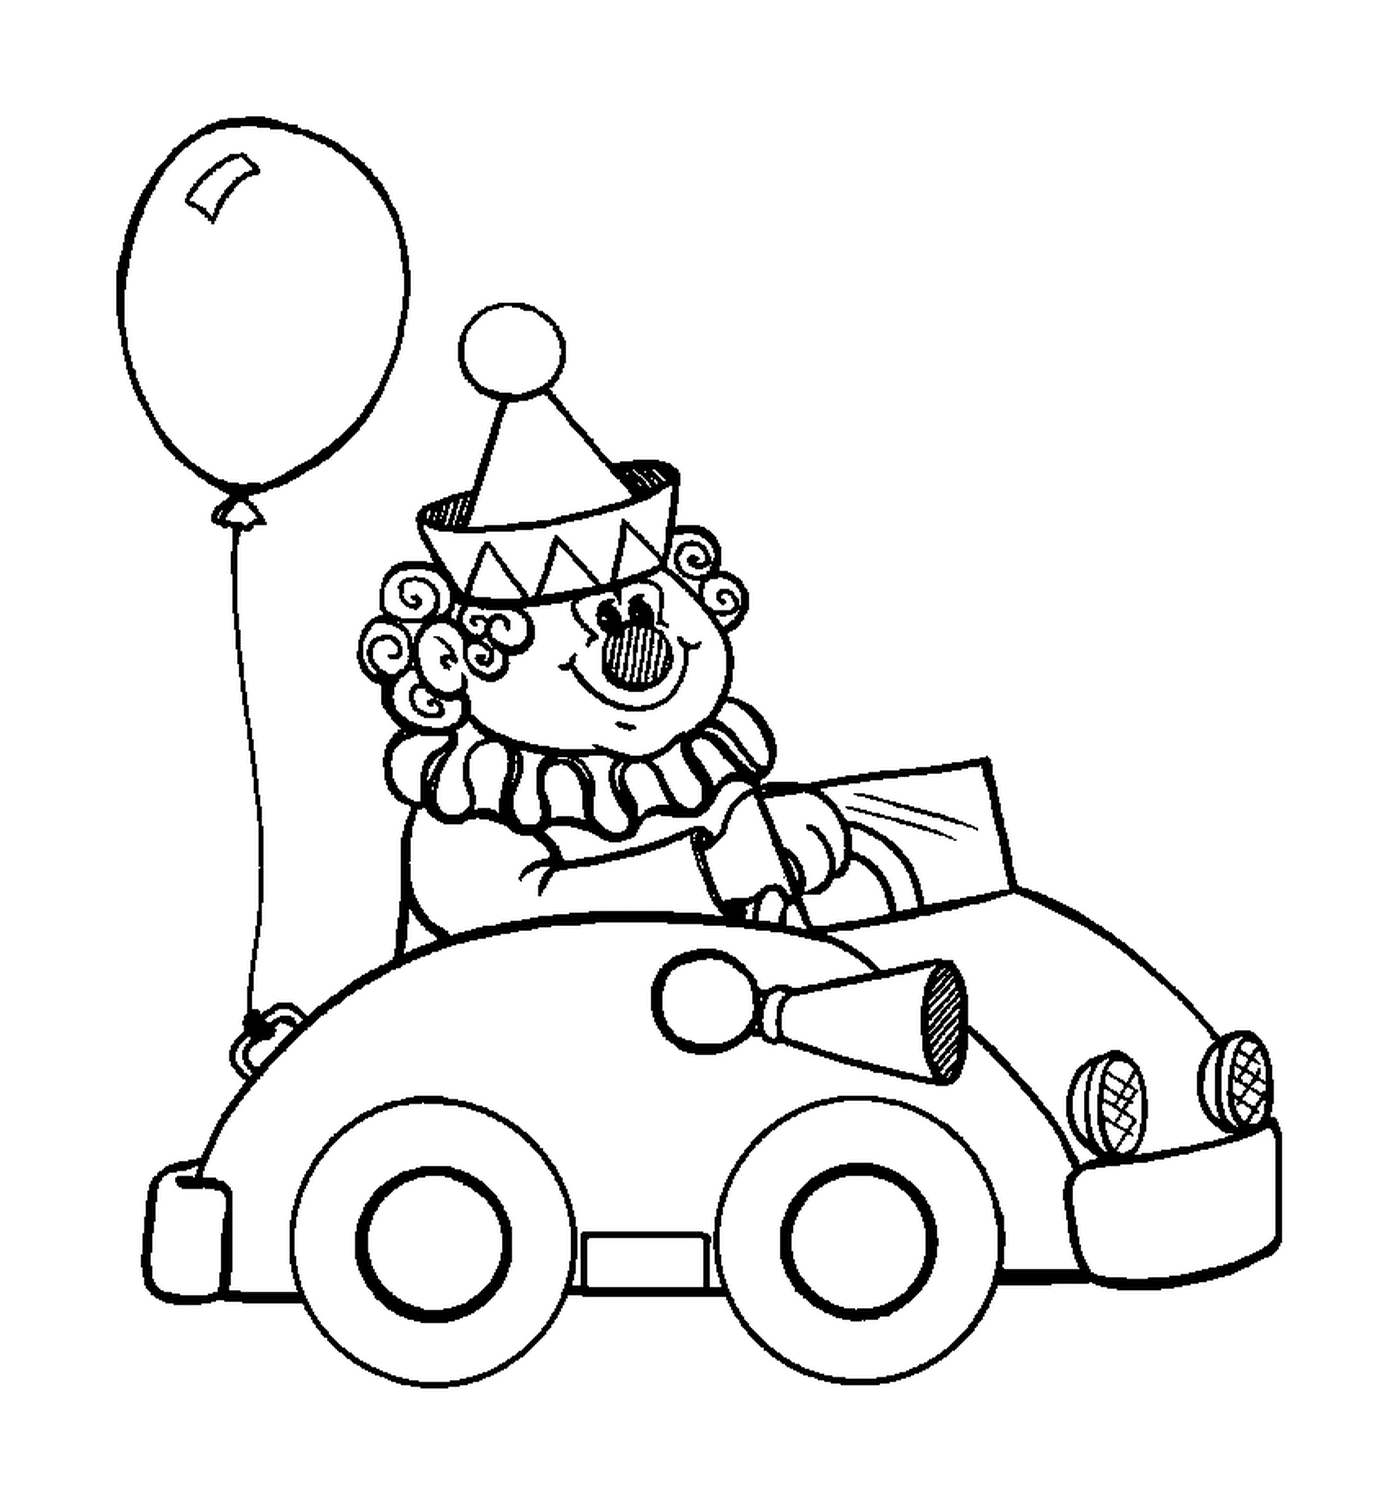  Клоун в машине для цирка 